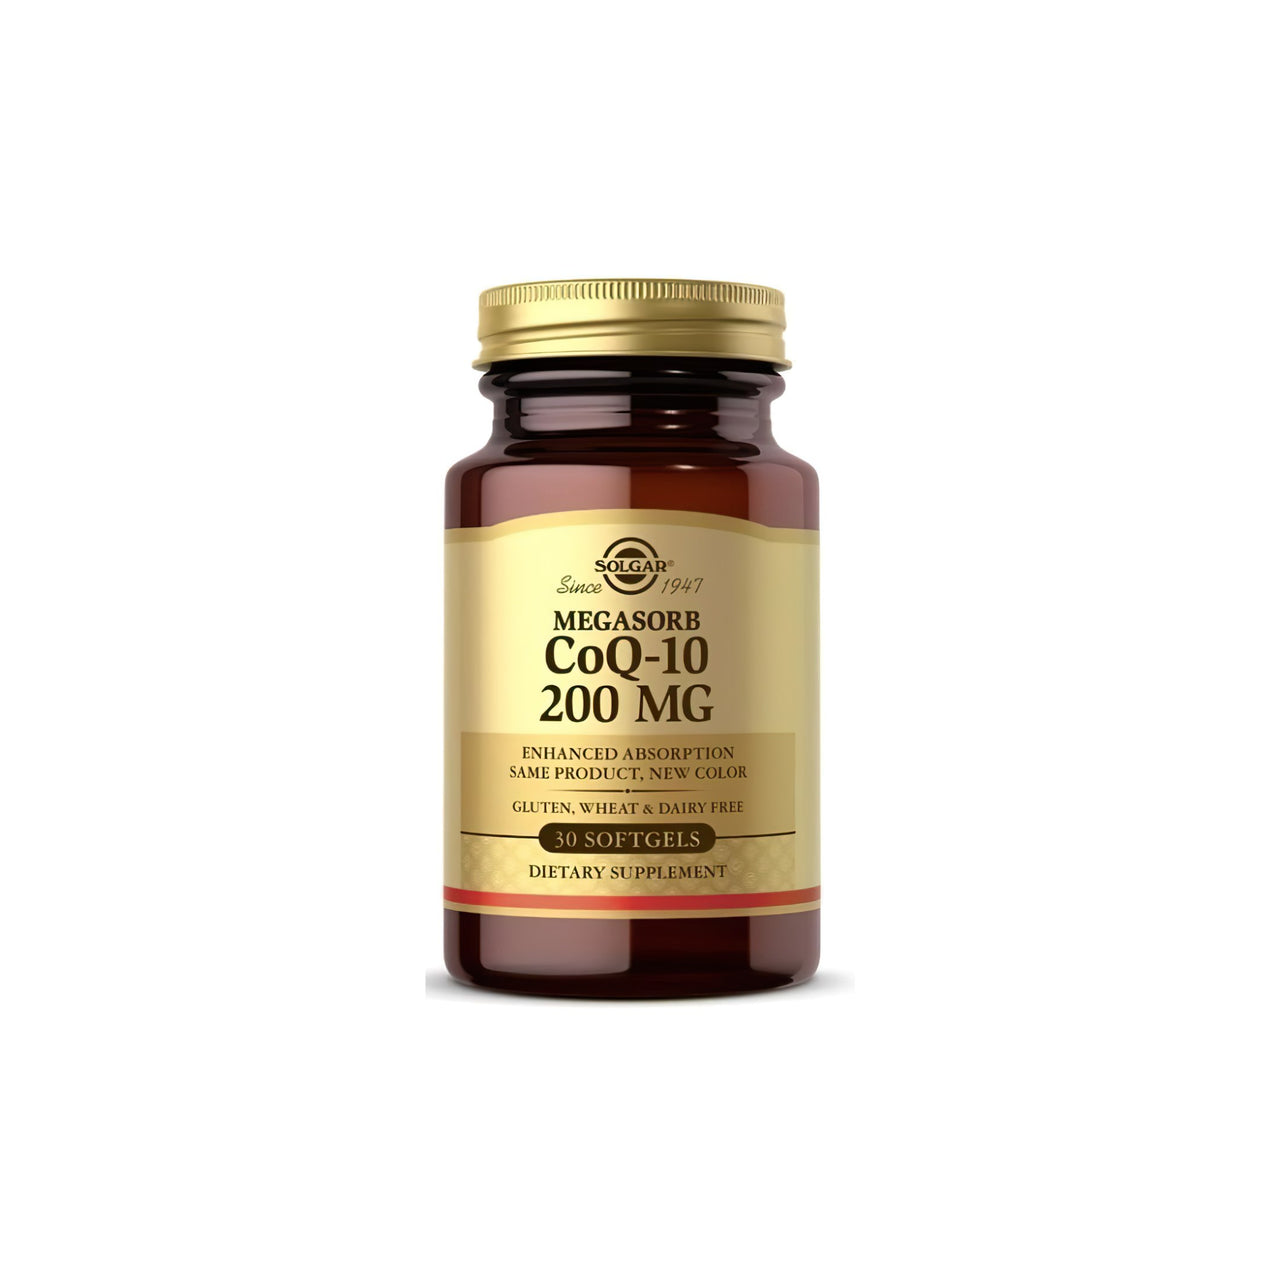 Eine Flasche Solgar Megasorb CoQ-10 200 mg 30 Weichkapseln auf einem weißen Hintergrund.